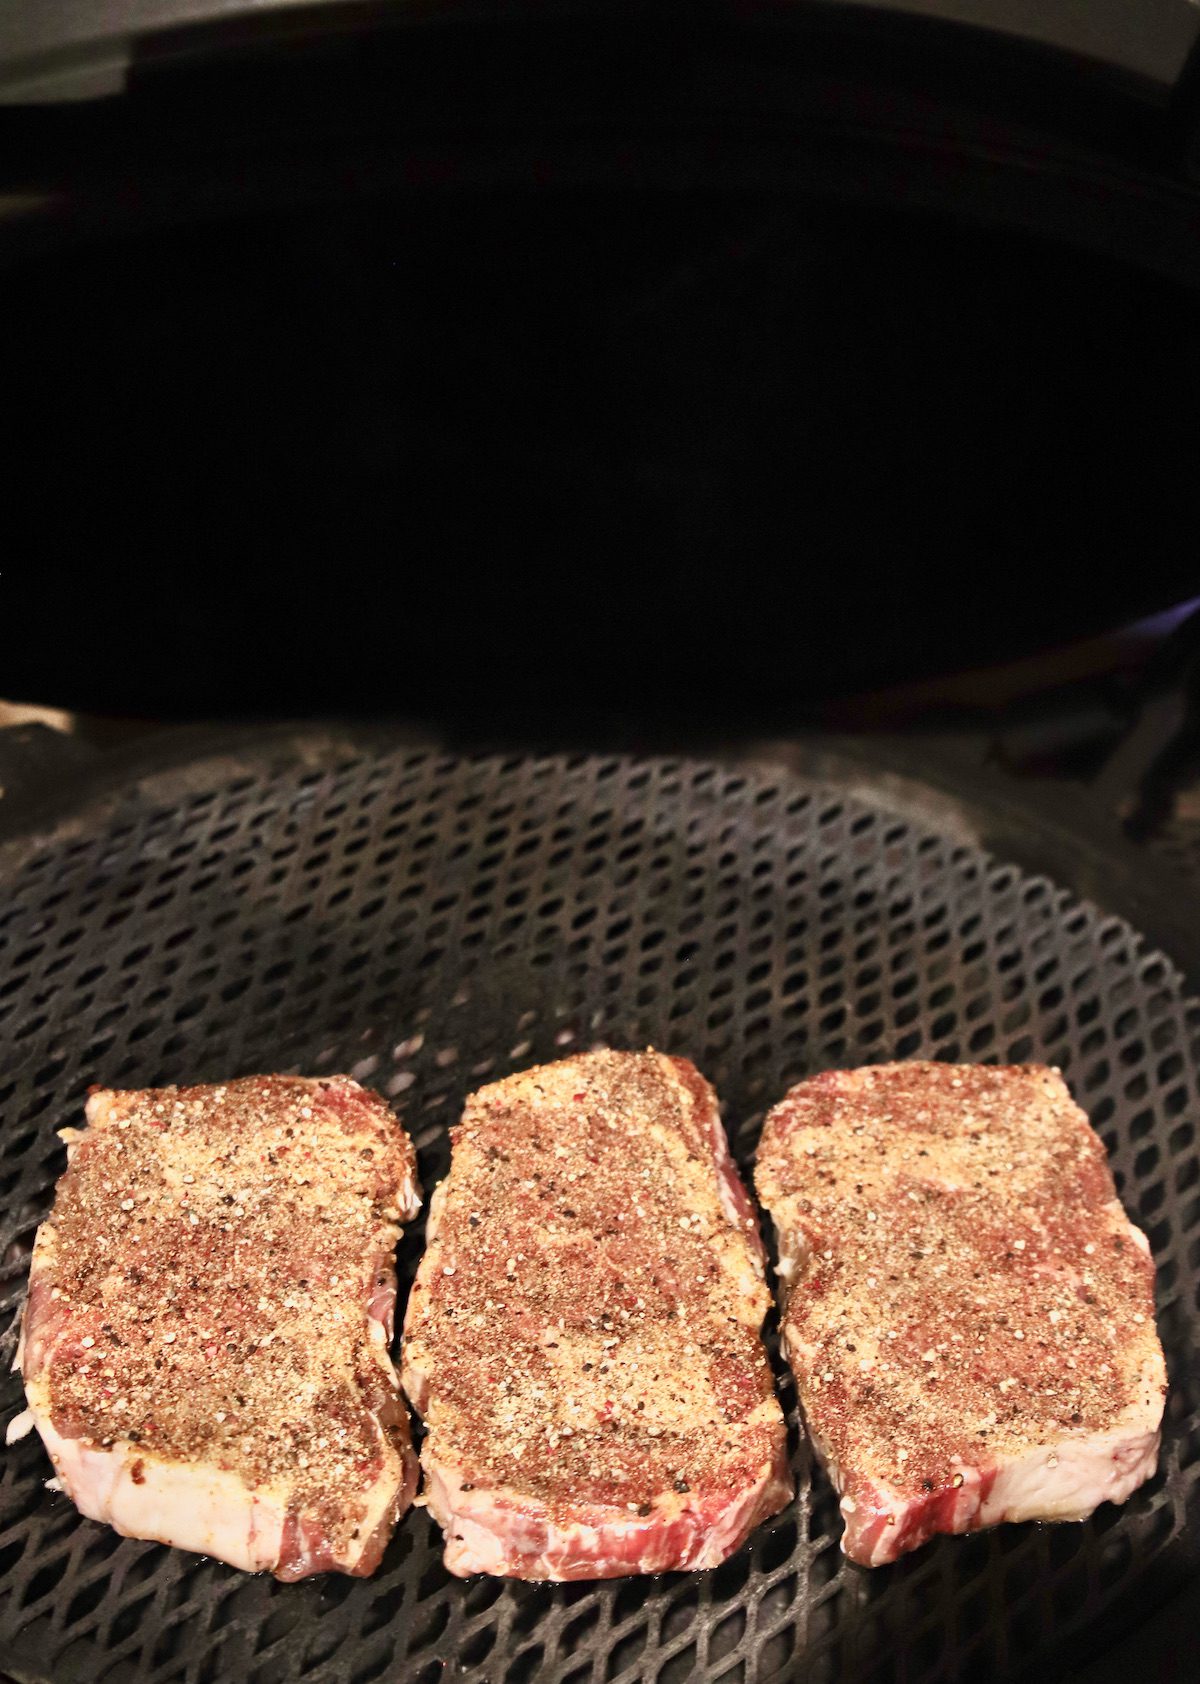 grilling ribeye steaks